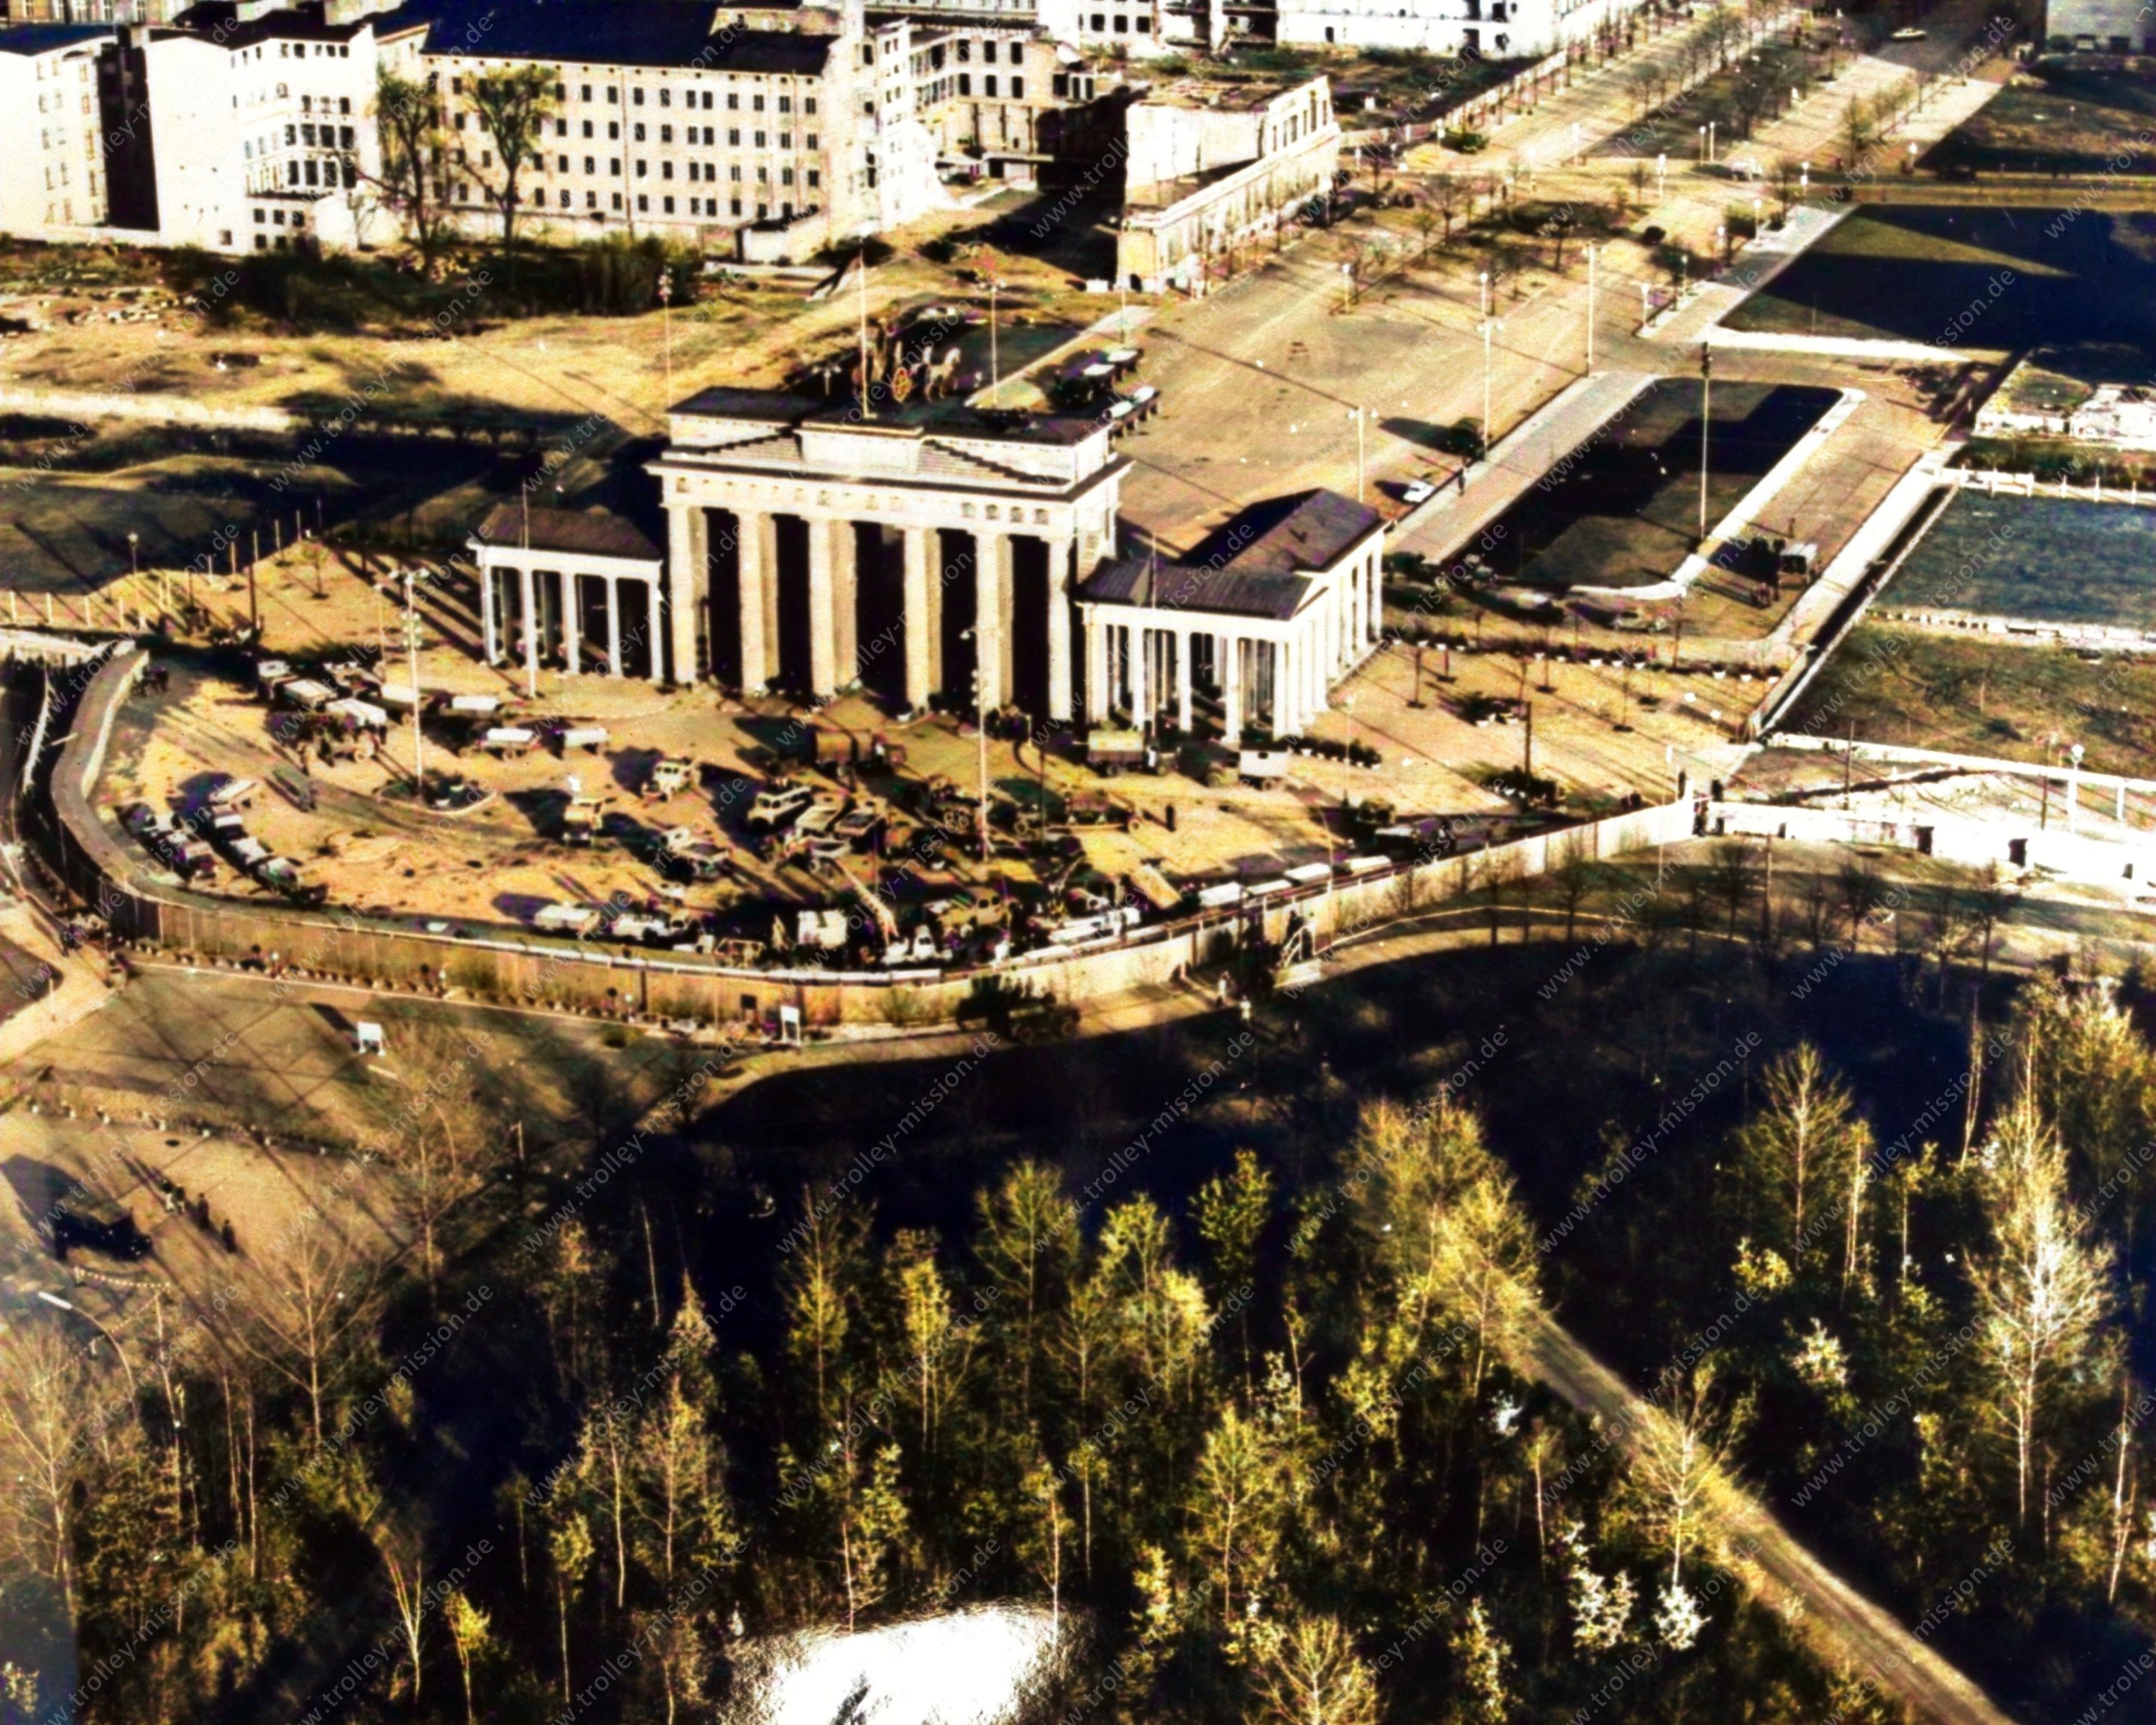 Am 30. November 1961, als dieses Luftbild gemacht wurde, ist eine Vielzahl an Baufahrzeugen und Bauarbeitern vor dem Brandenburger Tor damit beschäftigt, eine überdurchschnittlich breite Panzermauer auf dem Pariser Platz einzubetonieren.